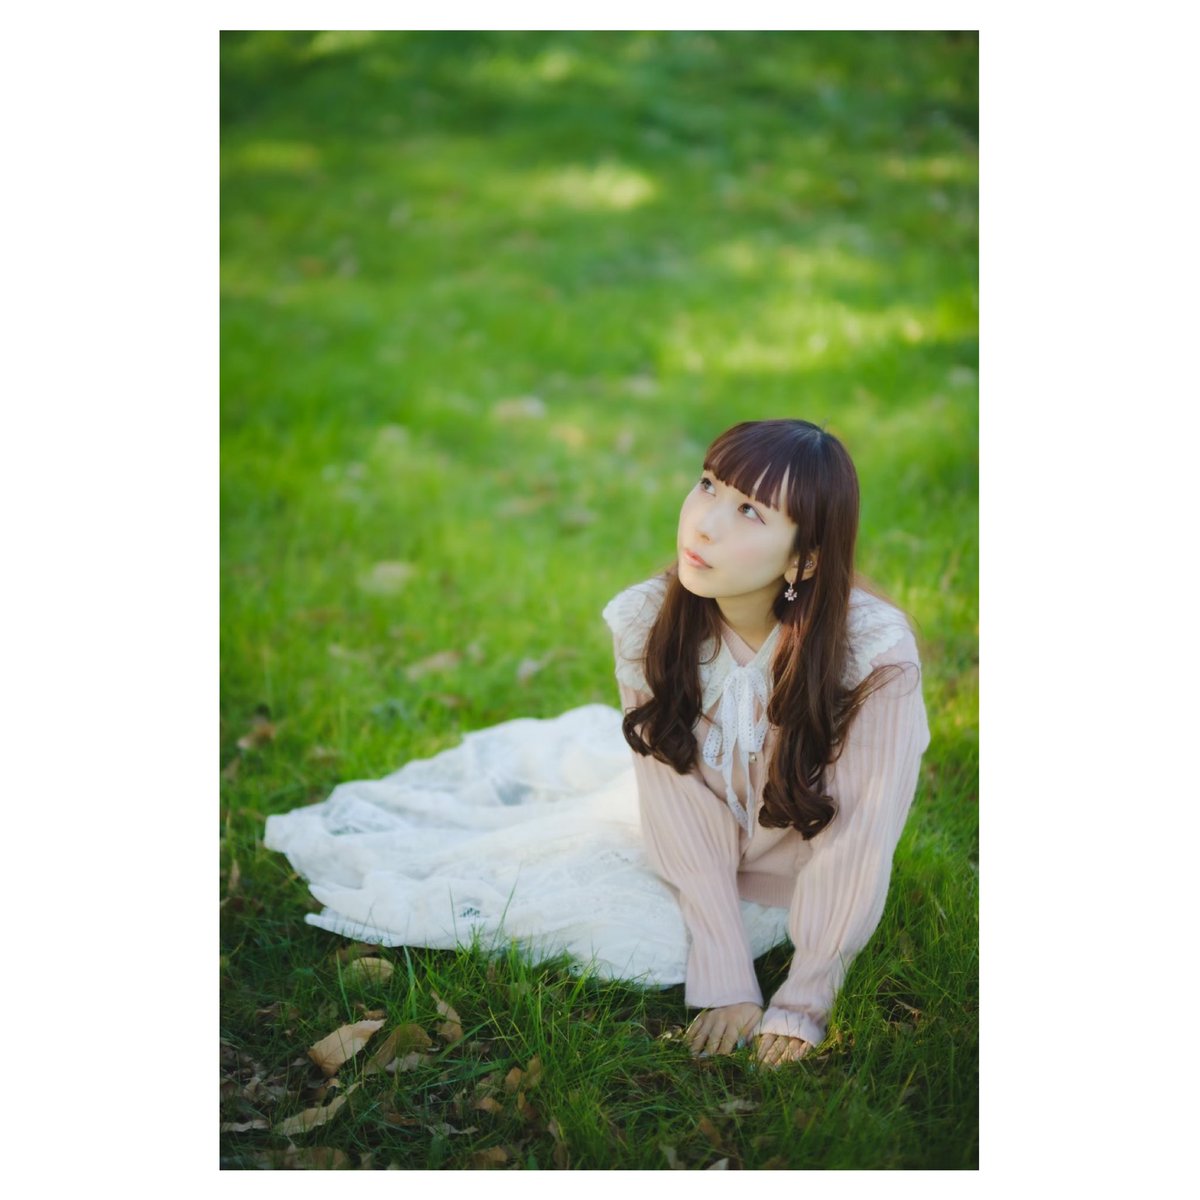 緑と縁〔みみ〕
@Mimi_usagiOoo 

#人にはそれぞれ魅力がある
#ポートレート 
#portrait 
#被写体募集中 
#fujifilm_X